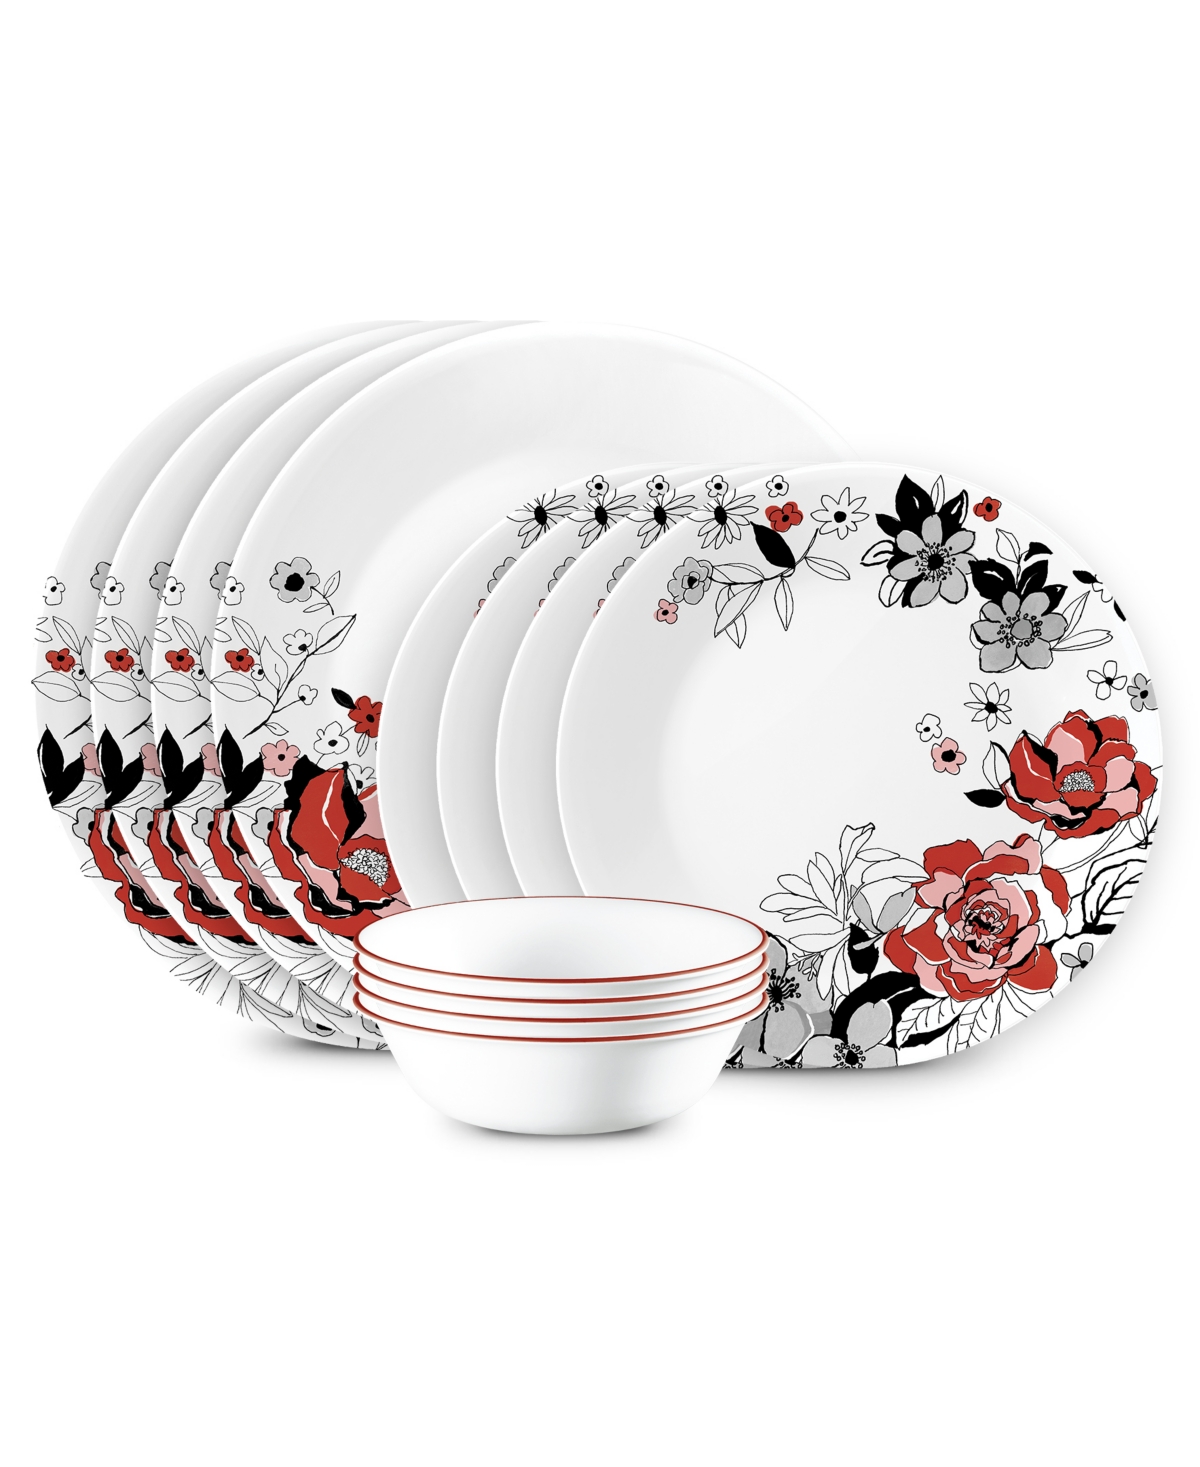 Vitrelle Chelsea Rose 12-Piece Dinnerware Set, Service for 4 - White